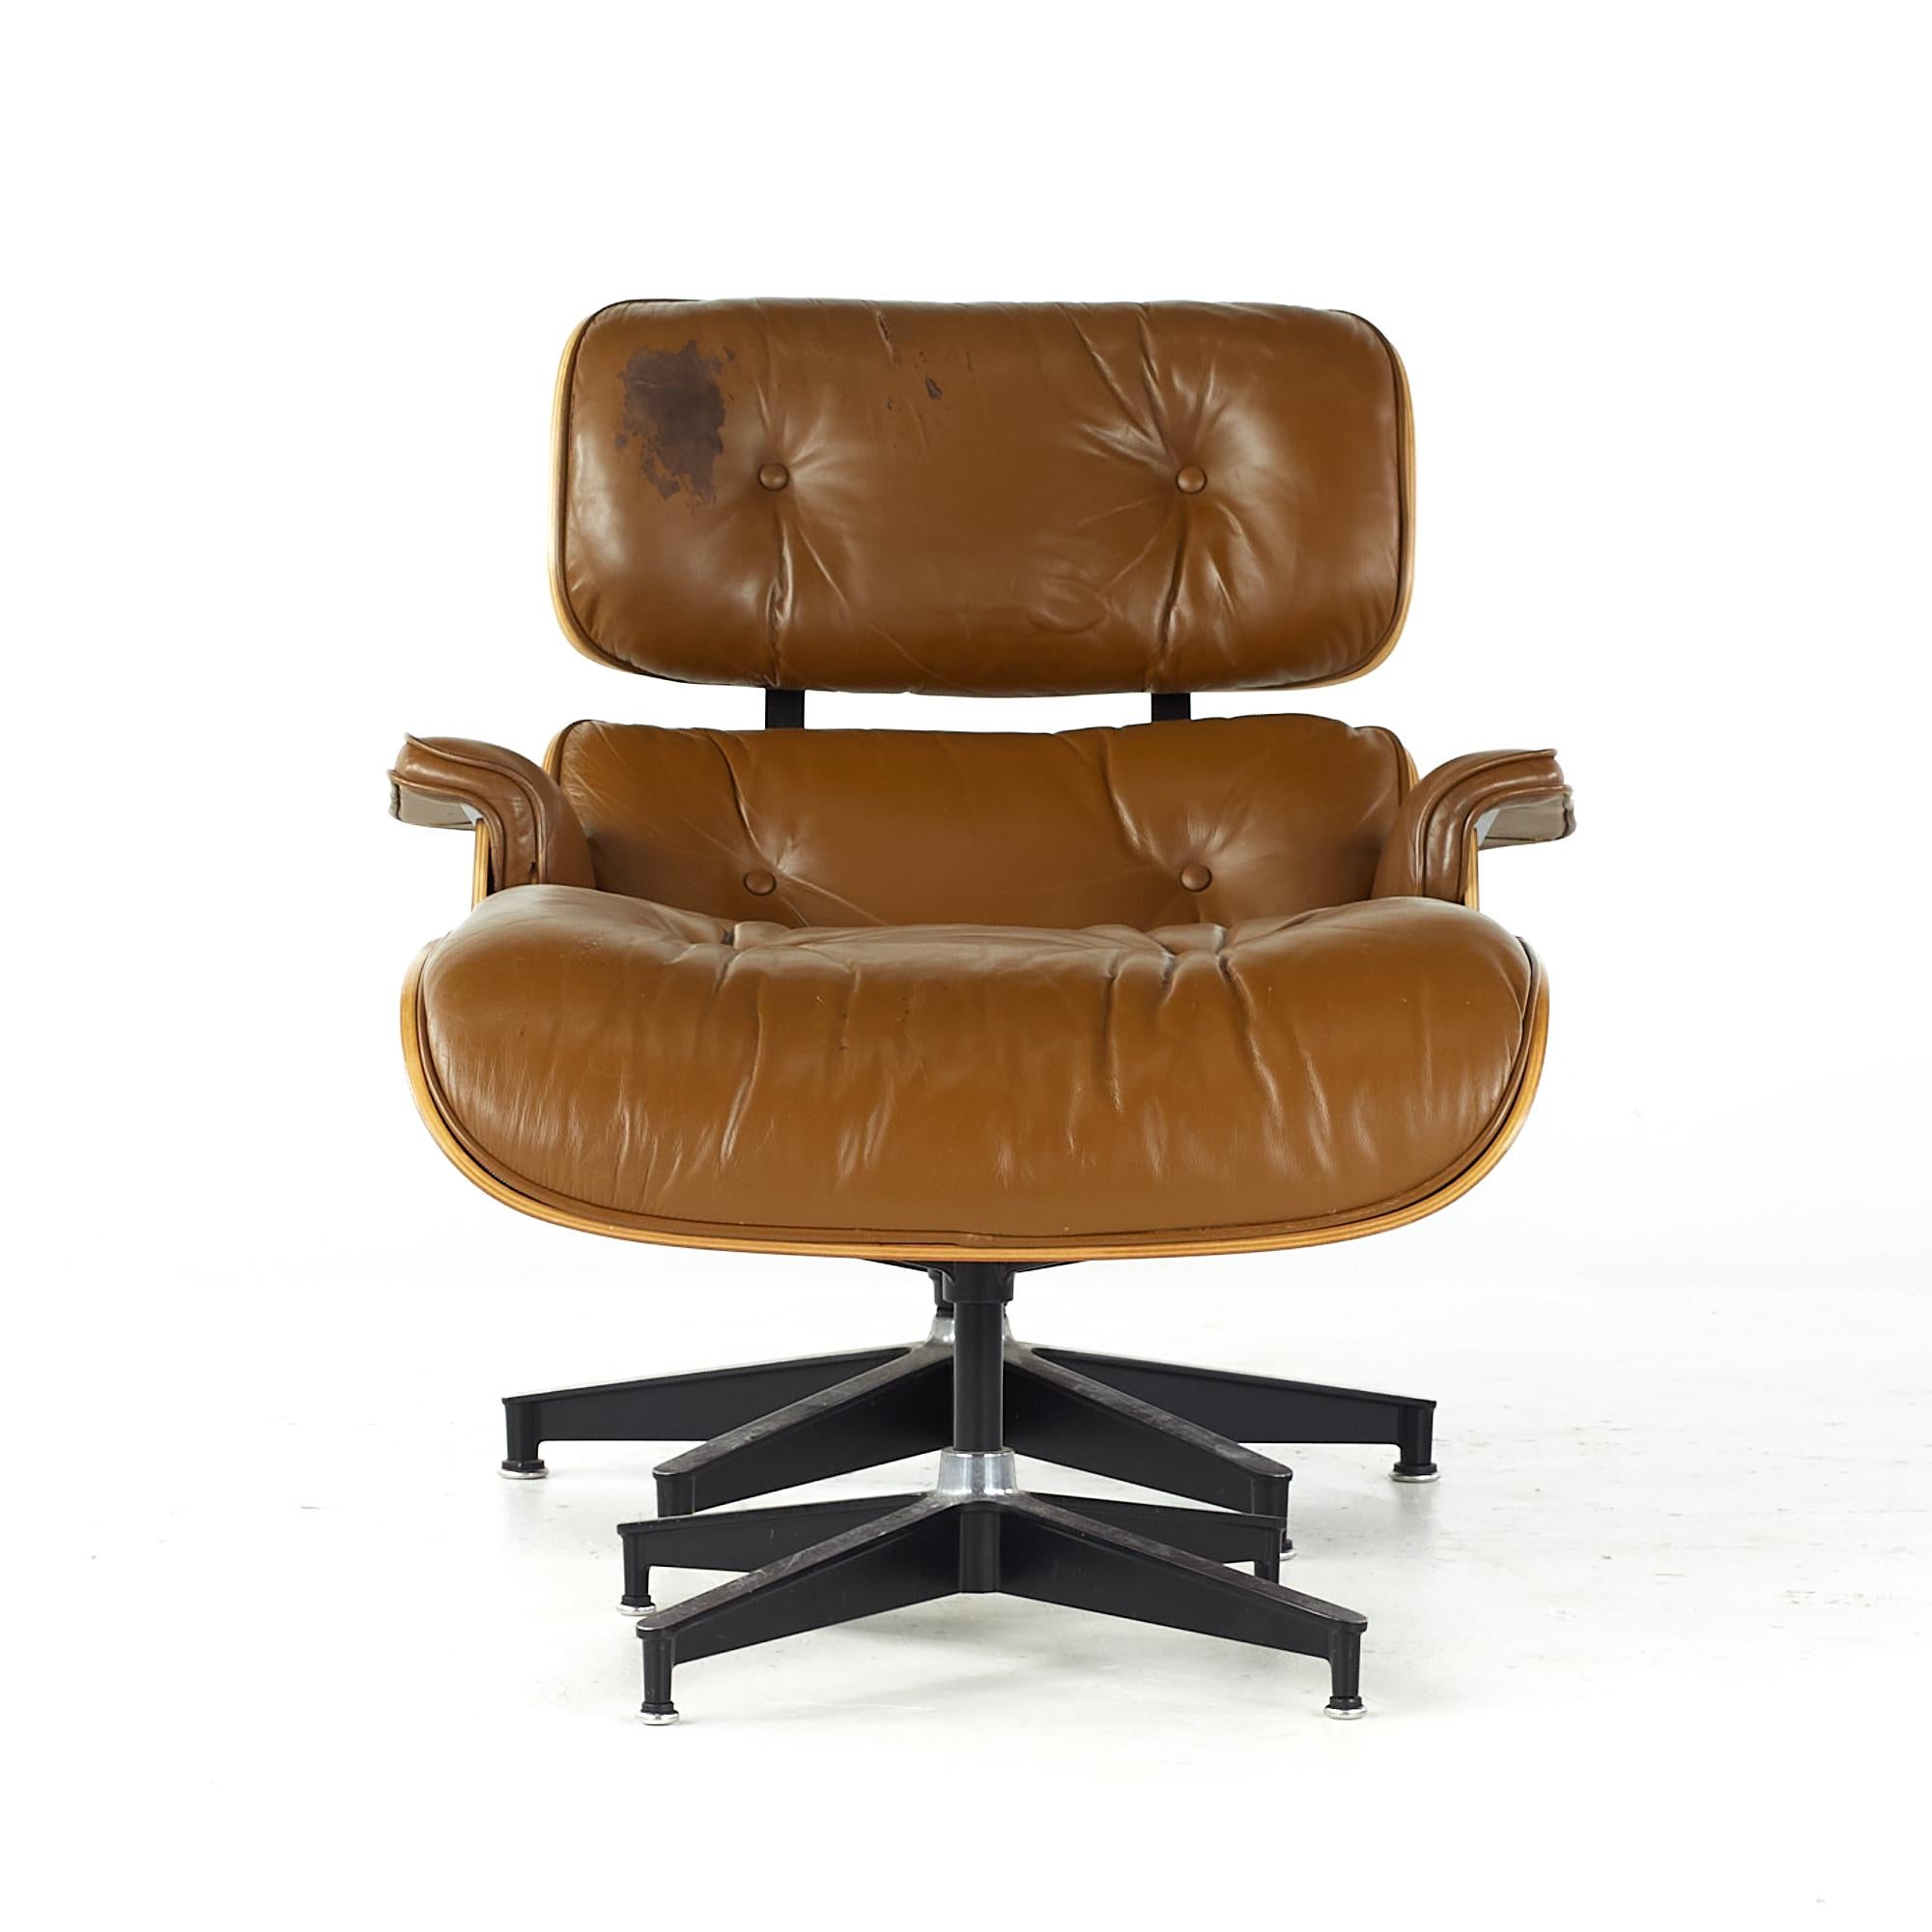 Charles and Ray Eames fauteuil de salon et pouf en cerisier du milieu du siècle dernier

La chaise mesure : 32 de large x 34 de profond x 32 de haut, avec une hauteur d'assise de 15 pouces et une hauteur d'accoudoir / dégagement de la chaise de 20